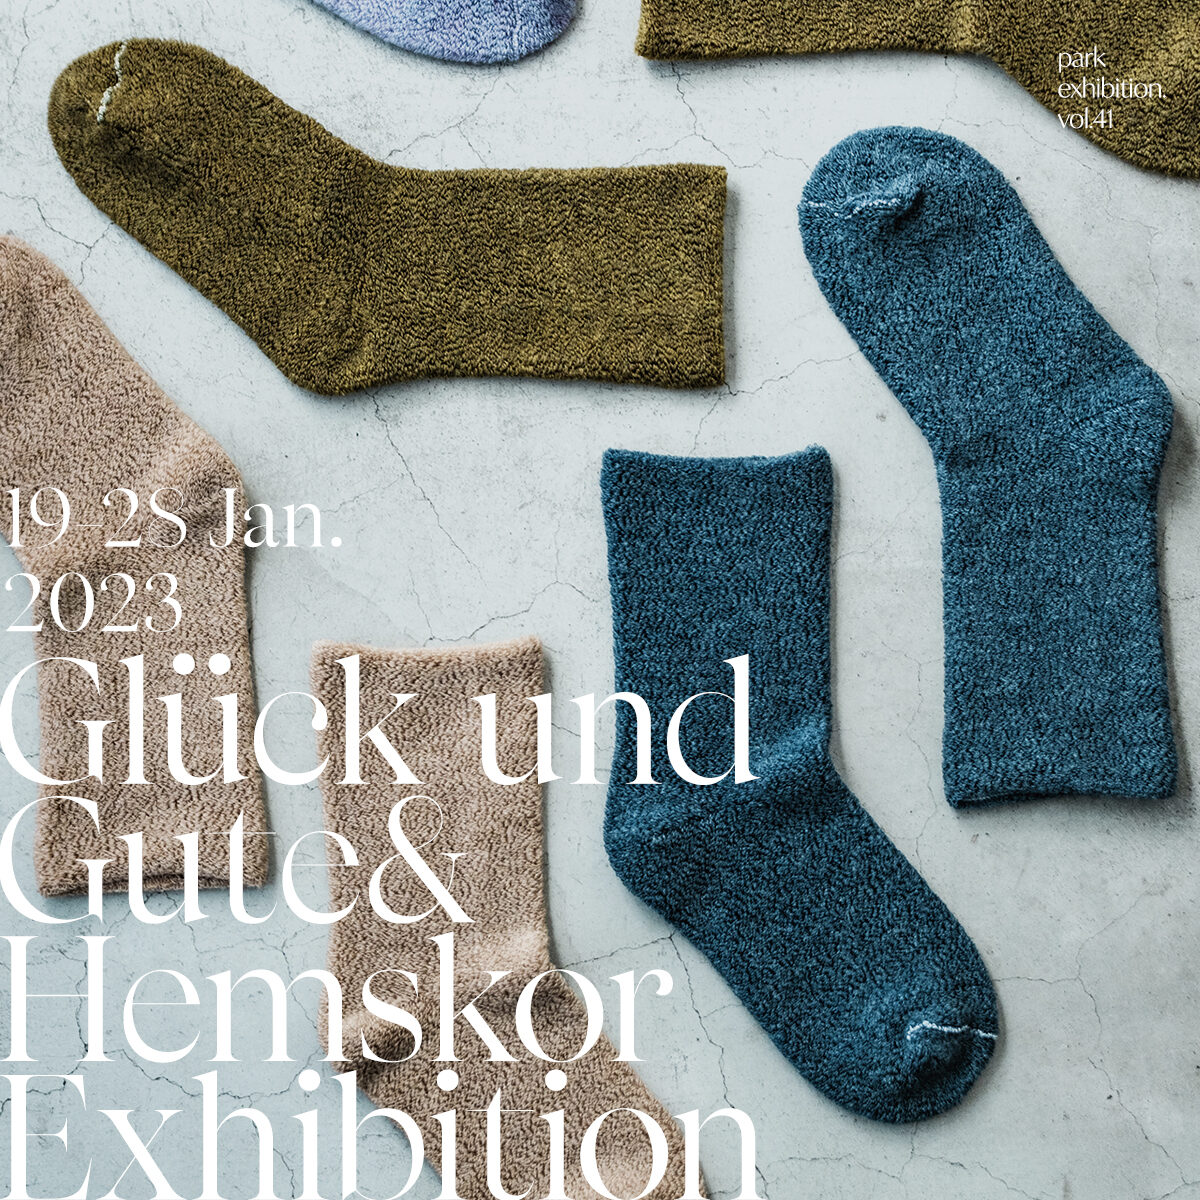 【Glück und Gute & Hemskor Exhibition 2023】開催のお知らせ